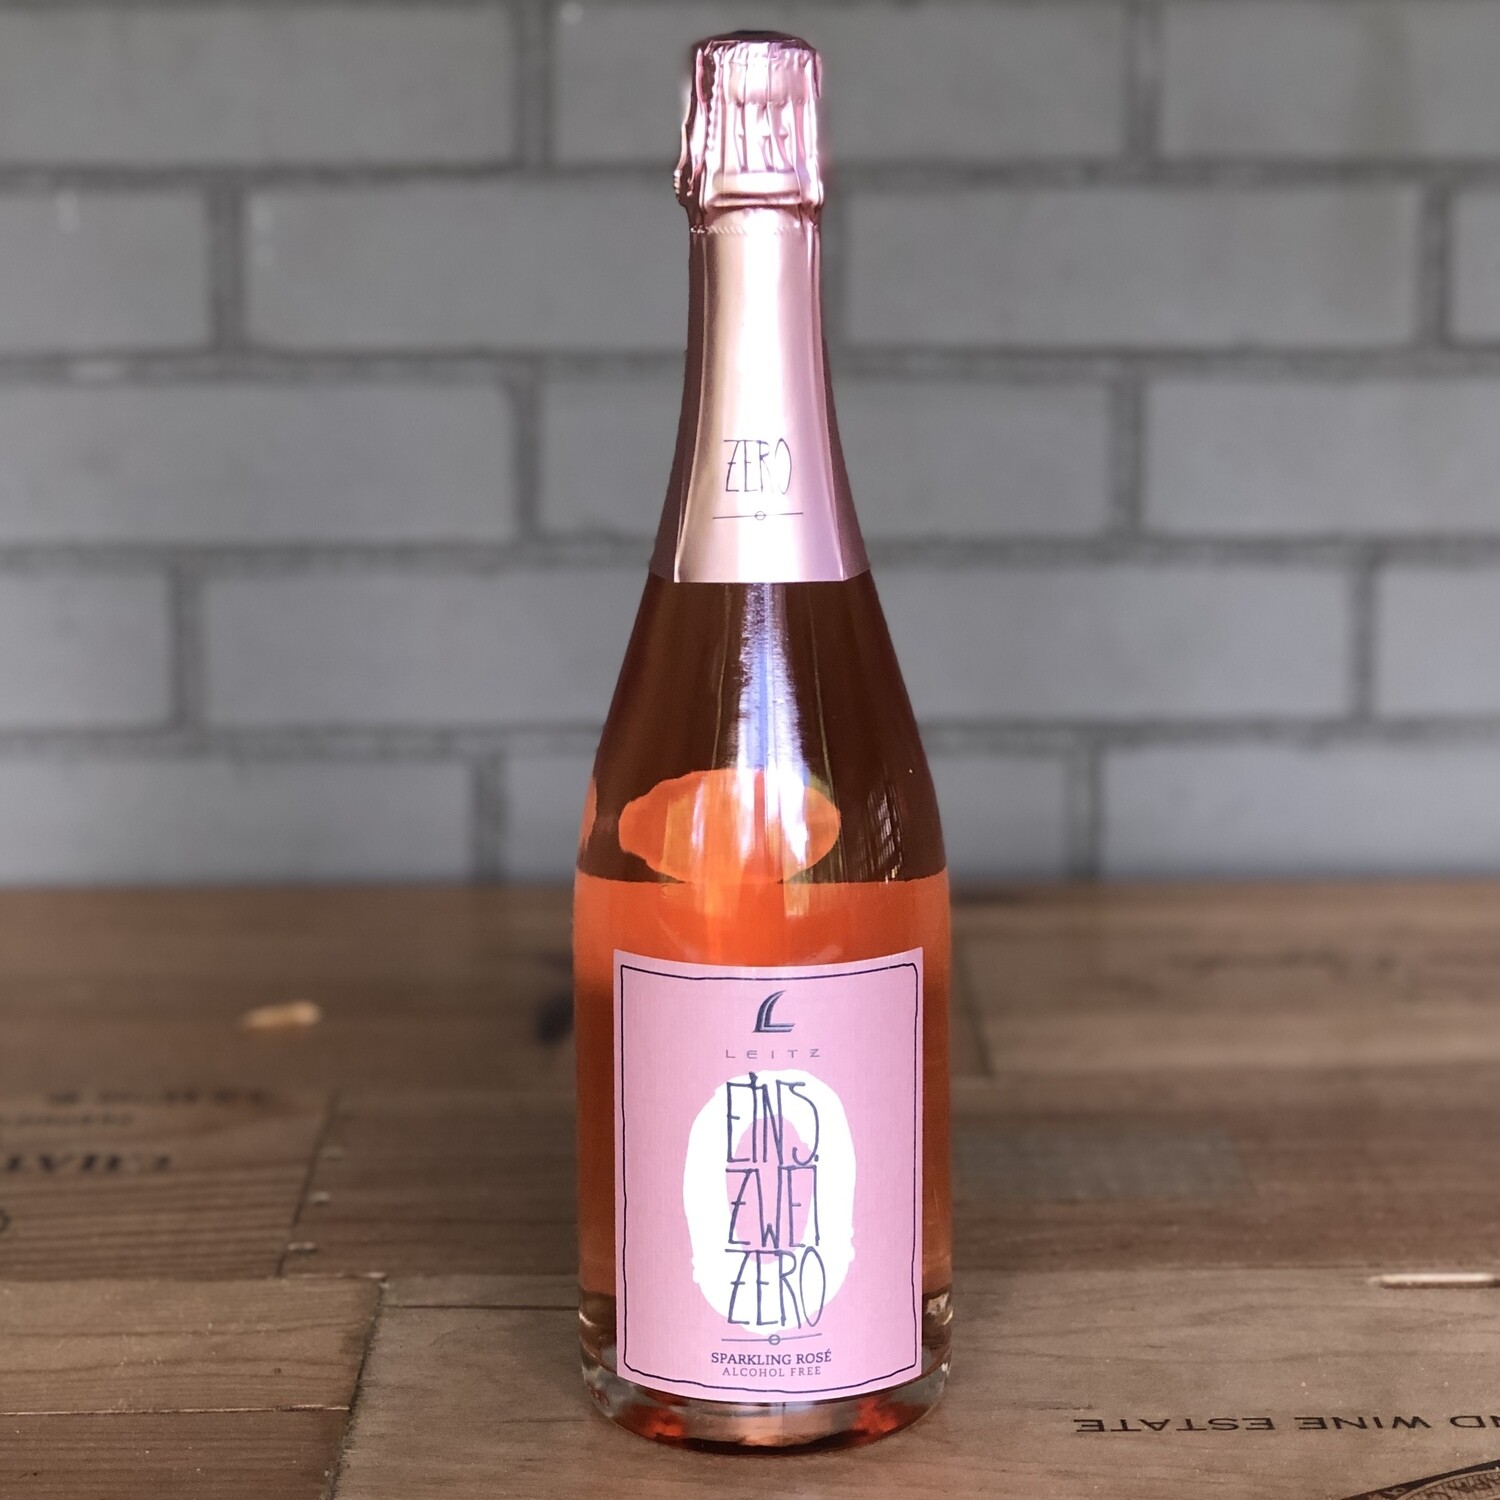 Leitz Eins Zwei Zero Non-Alcoholic Sparkling Rosé (750ml)